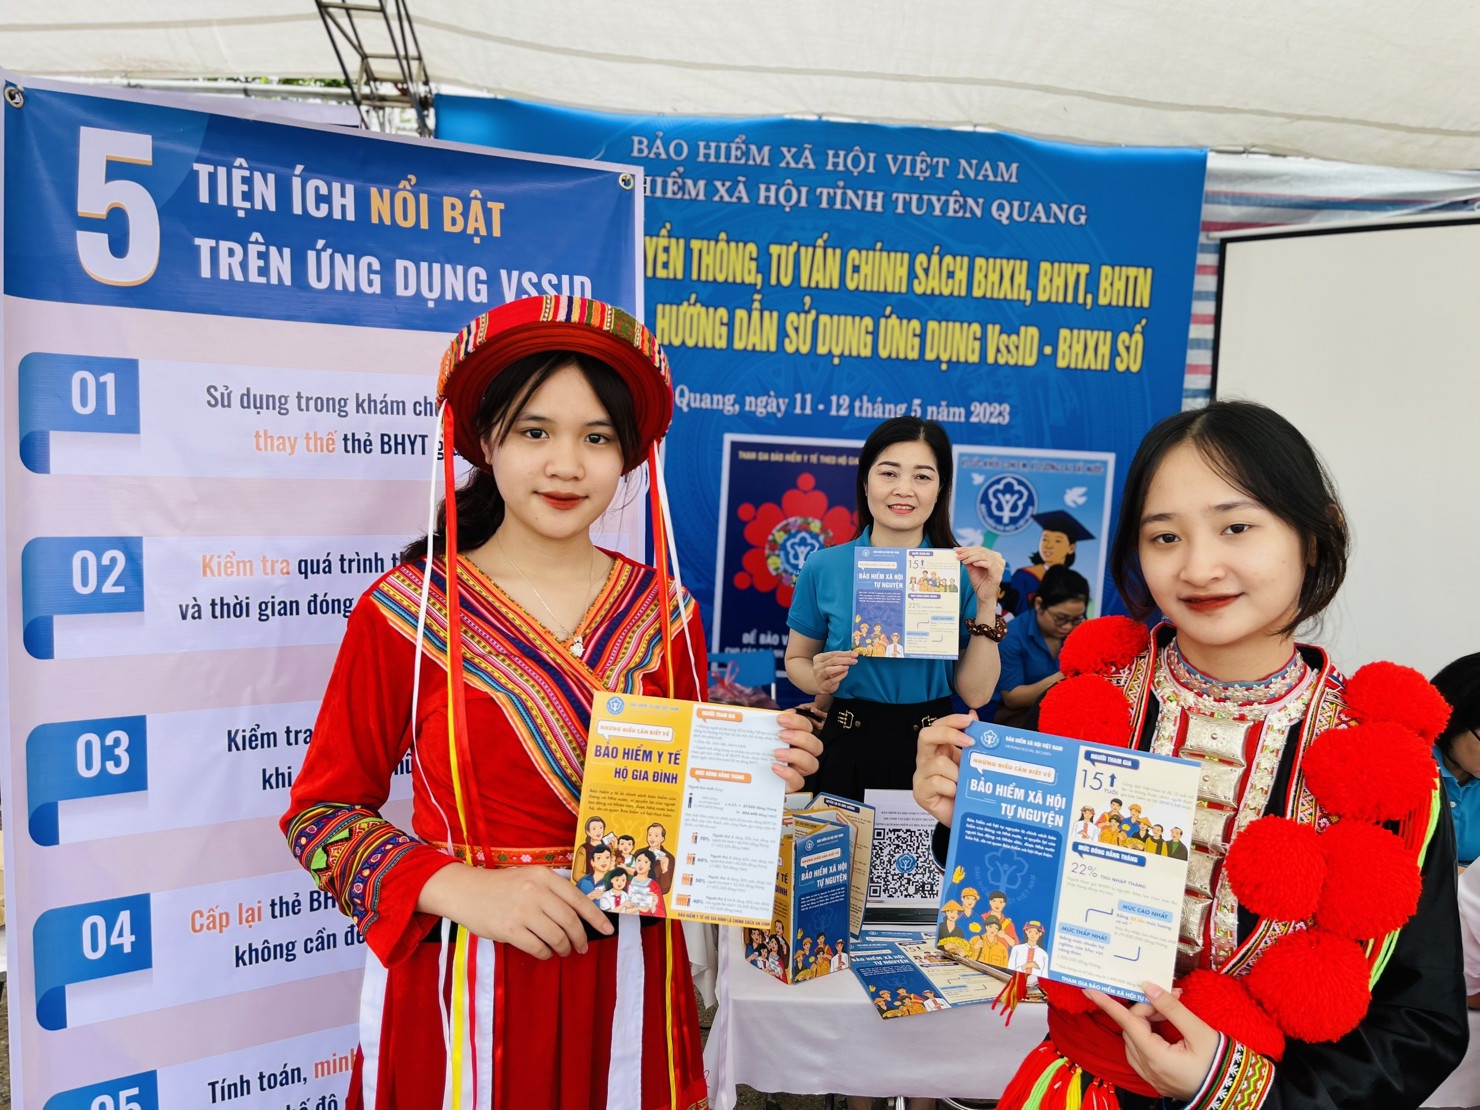 Việc đẩy mạnh chuyển đổi số của ngành BHXH Việt Nam đã góp phần giải quyết, chi trả chế độ, chính sách BHXH, BHYT, BHTN cho các đối tượng thụ hưởng kịp thời, chính xác, nhanh chóng.